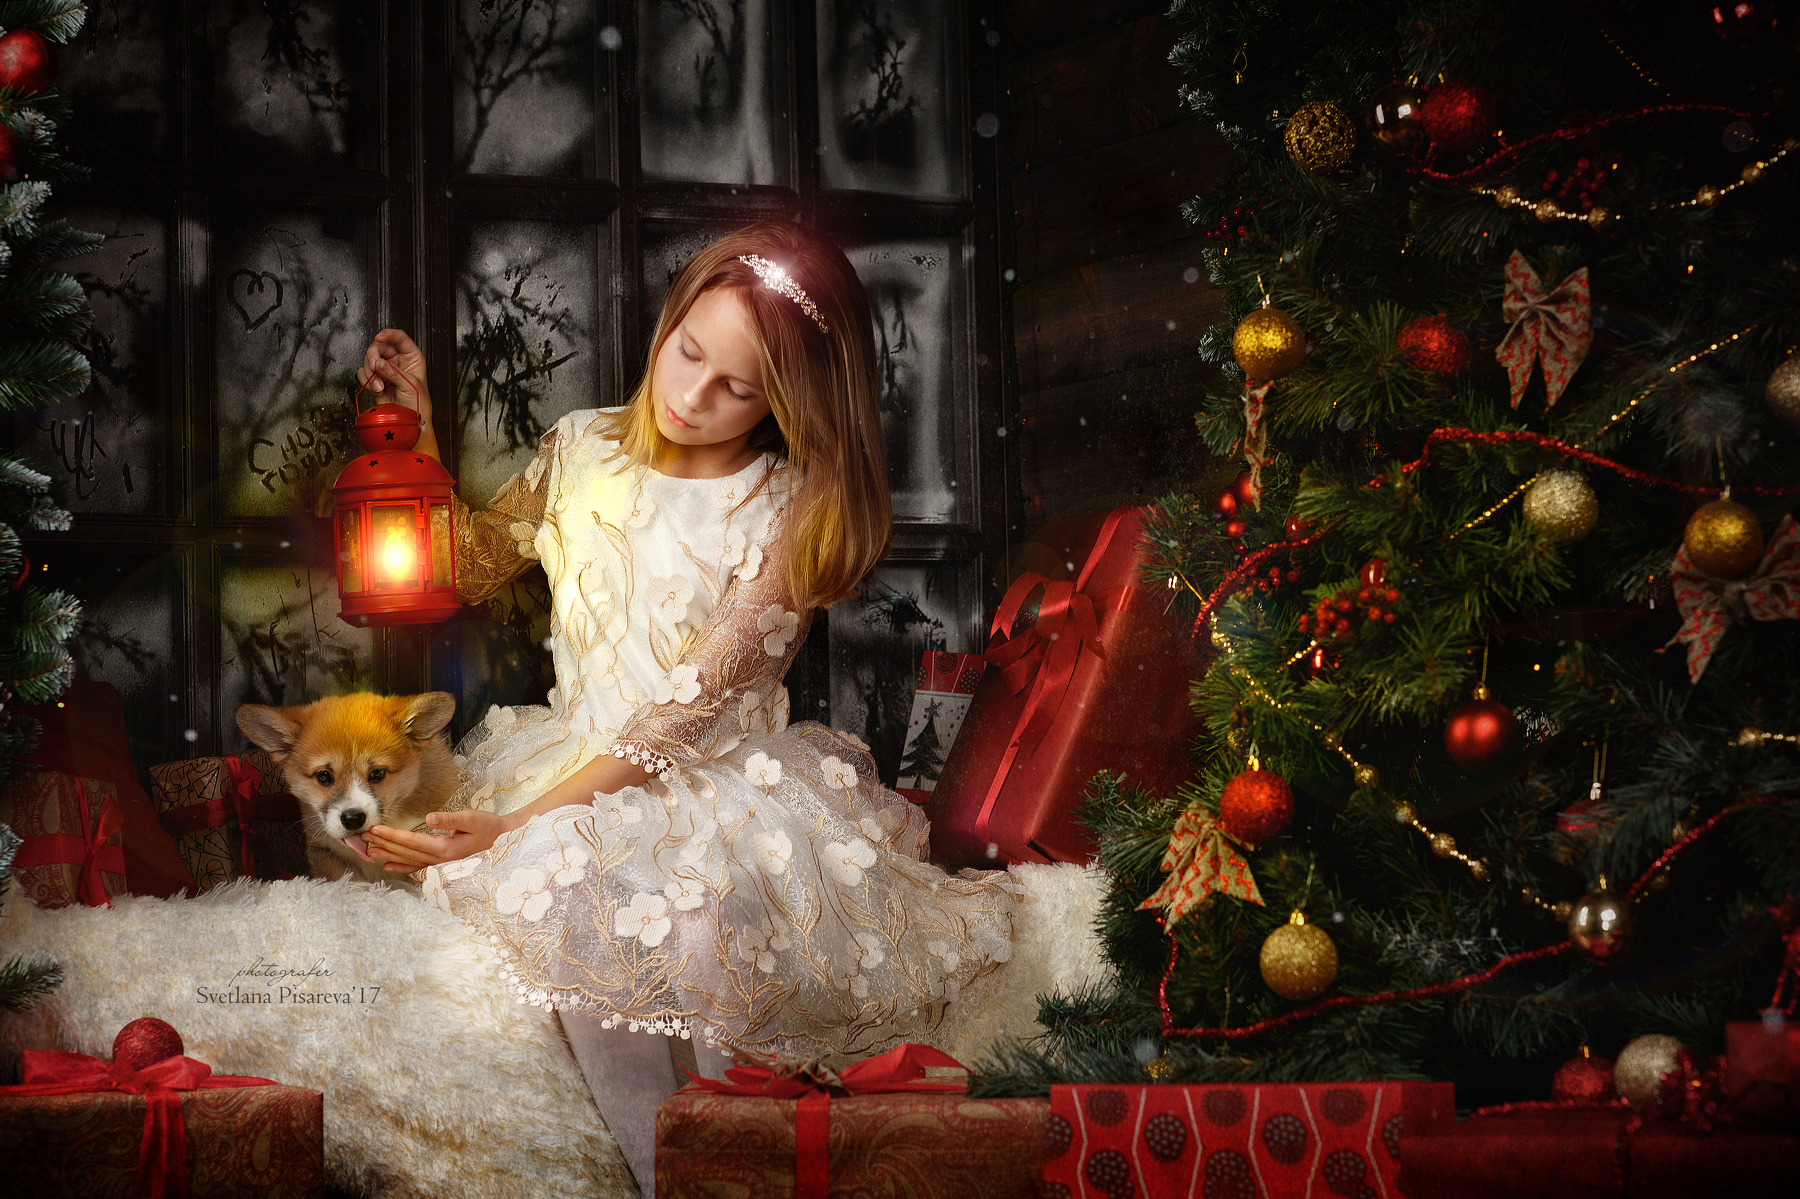 Фото Девочка, с фонарем в руке и щенком хаски рядом с ней, сидит около елки и подарков. Фотограф Светлана Писарева